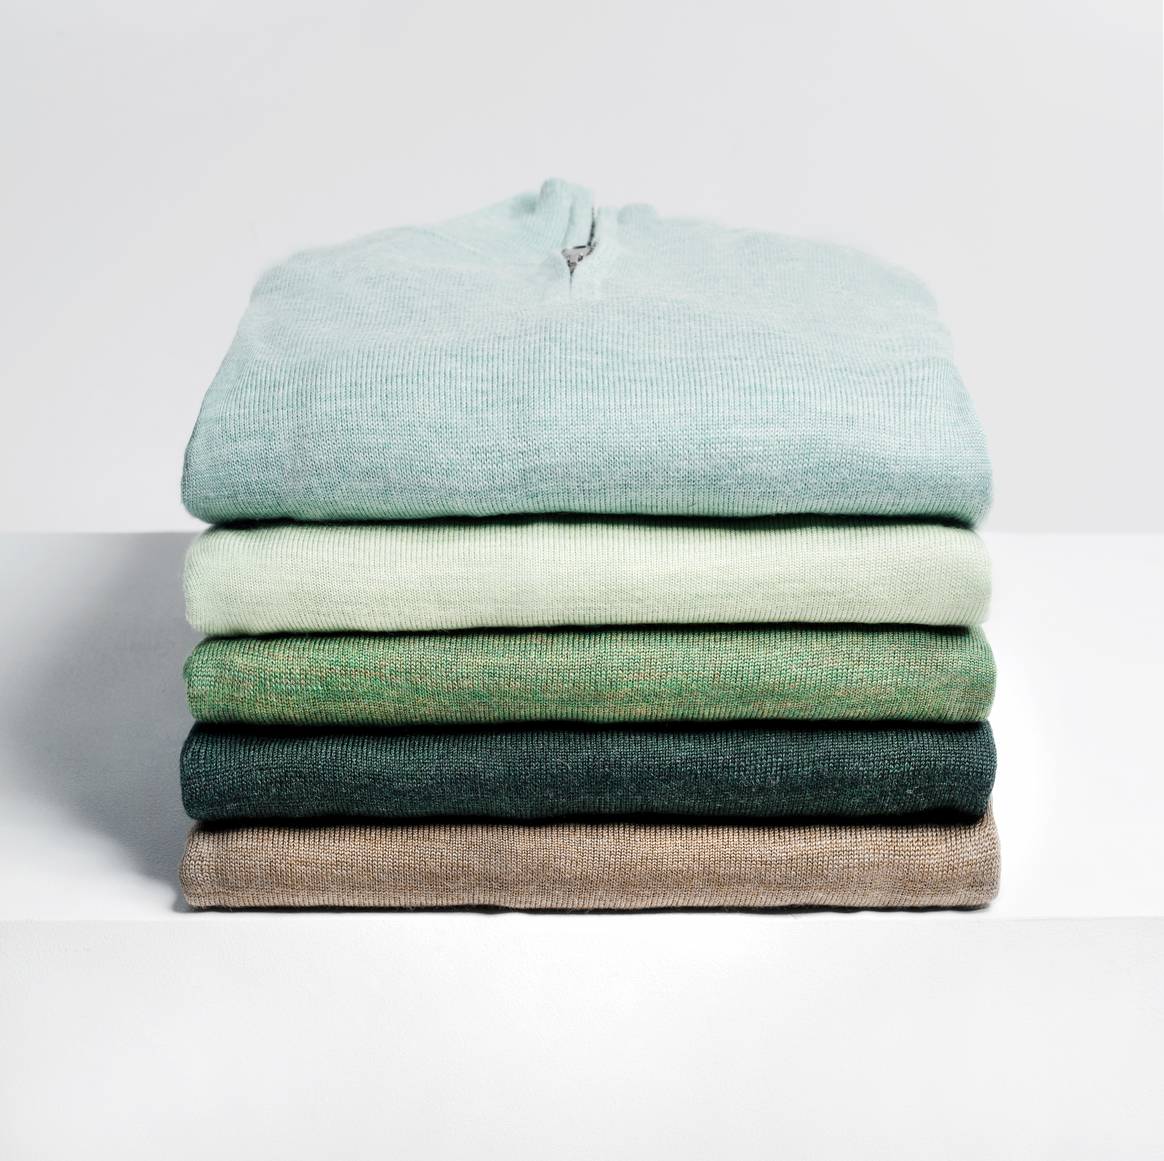 Essentials aus Wolle für Männer, das simple Konzept von Joe Merino. Bild: Joe Merino